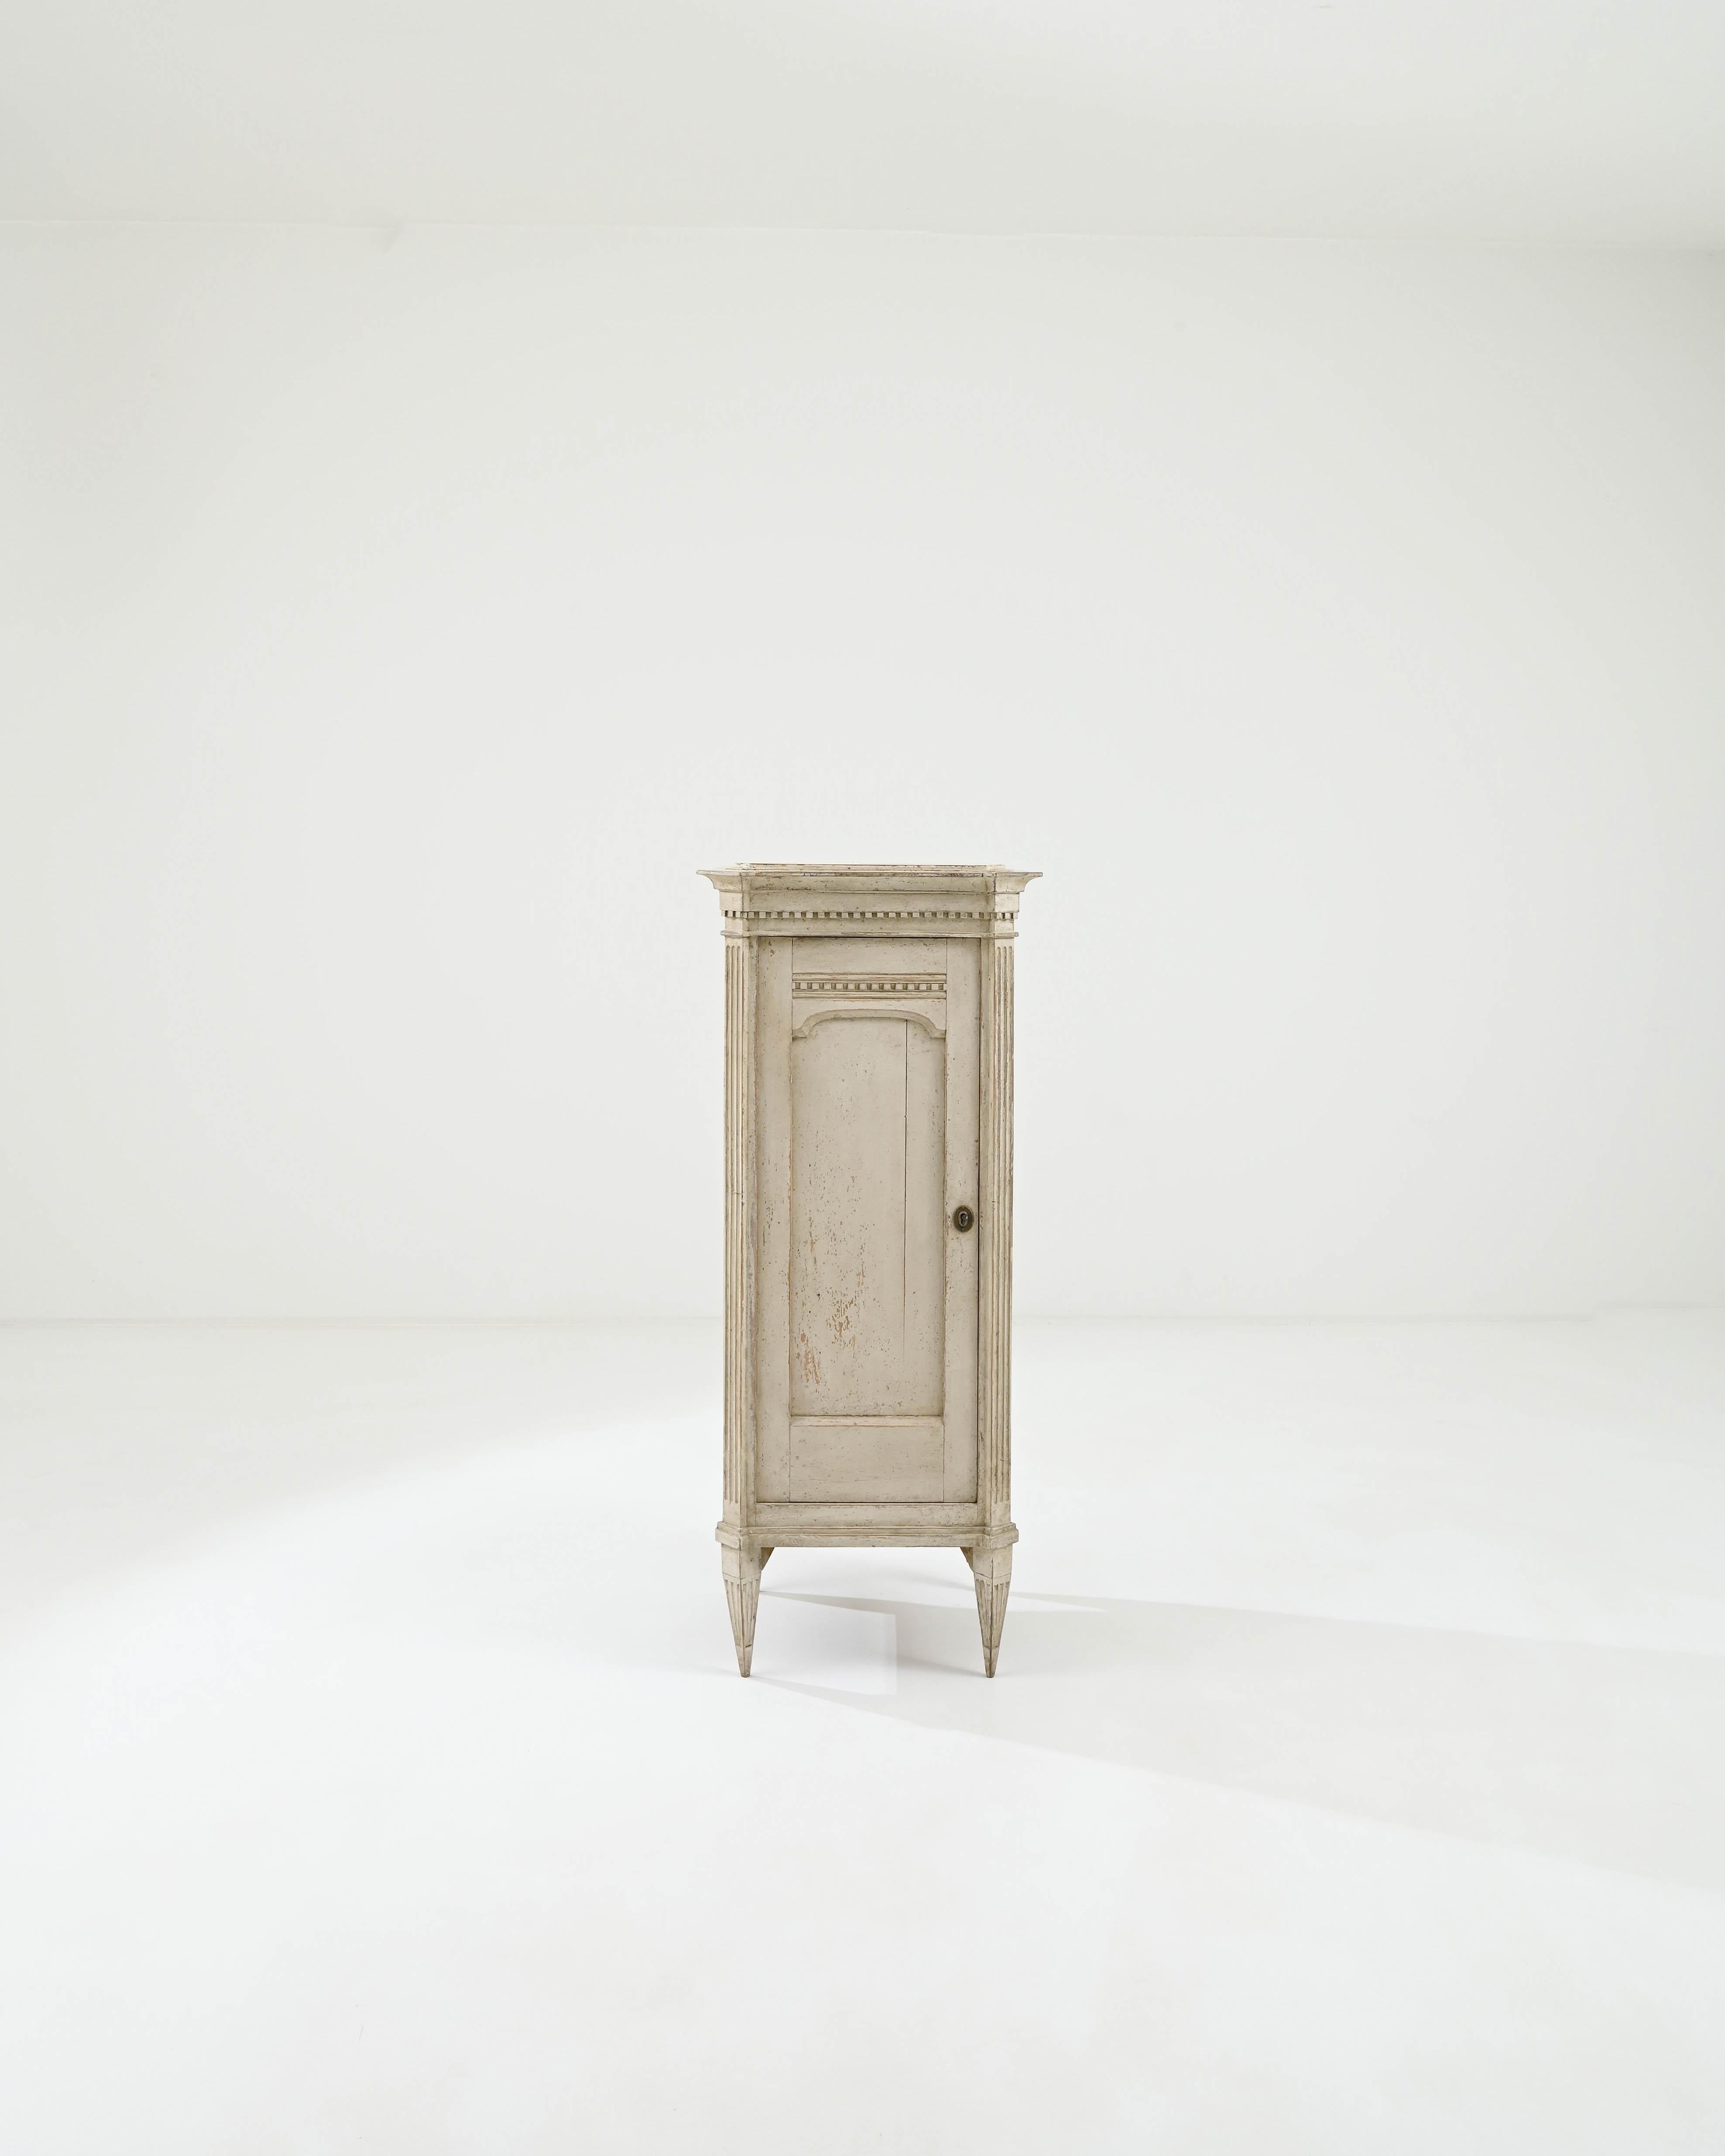 Ce meuble vintage en bois incarne l'élégance discrète du style gustavien. Construit en Scandinavie au début du siècle, de délicats éléments néoclassiques confèrent au boîtier un air de raffinement. La silhouette élancée est soulignée par des